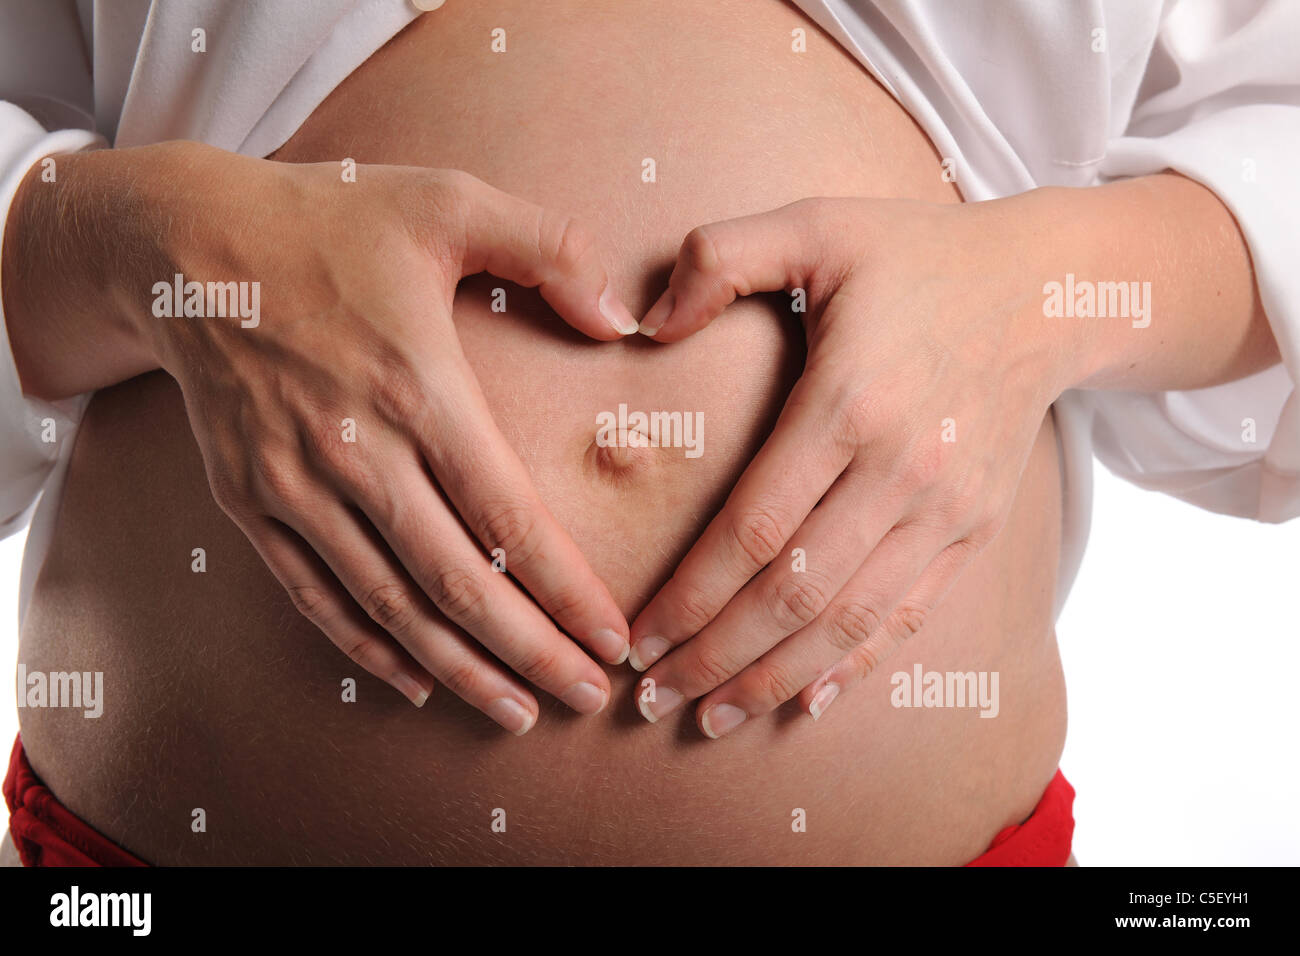 Pregnant woman making heart shape avec les mains sur son estomac isolé sur fond blanc Banque D'Images